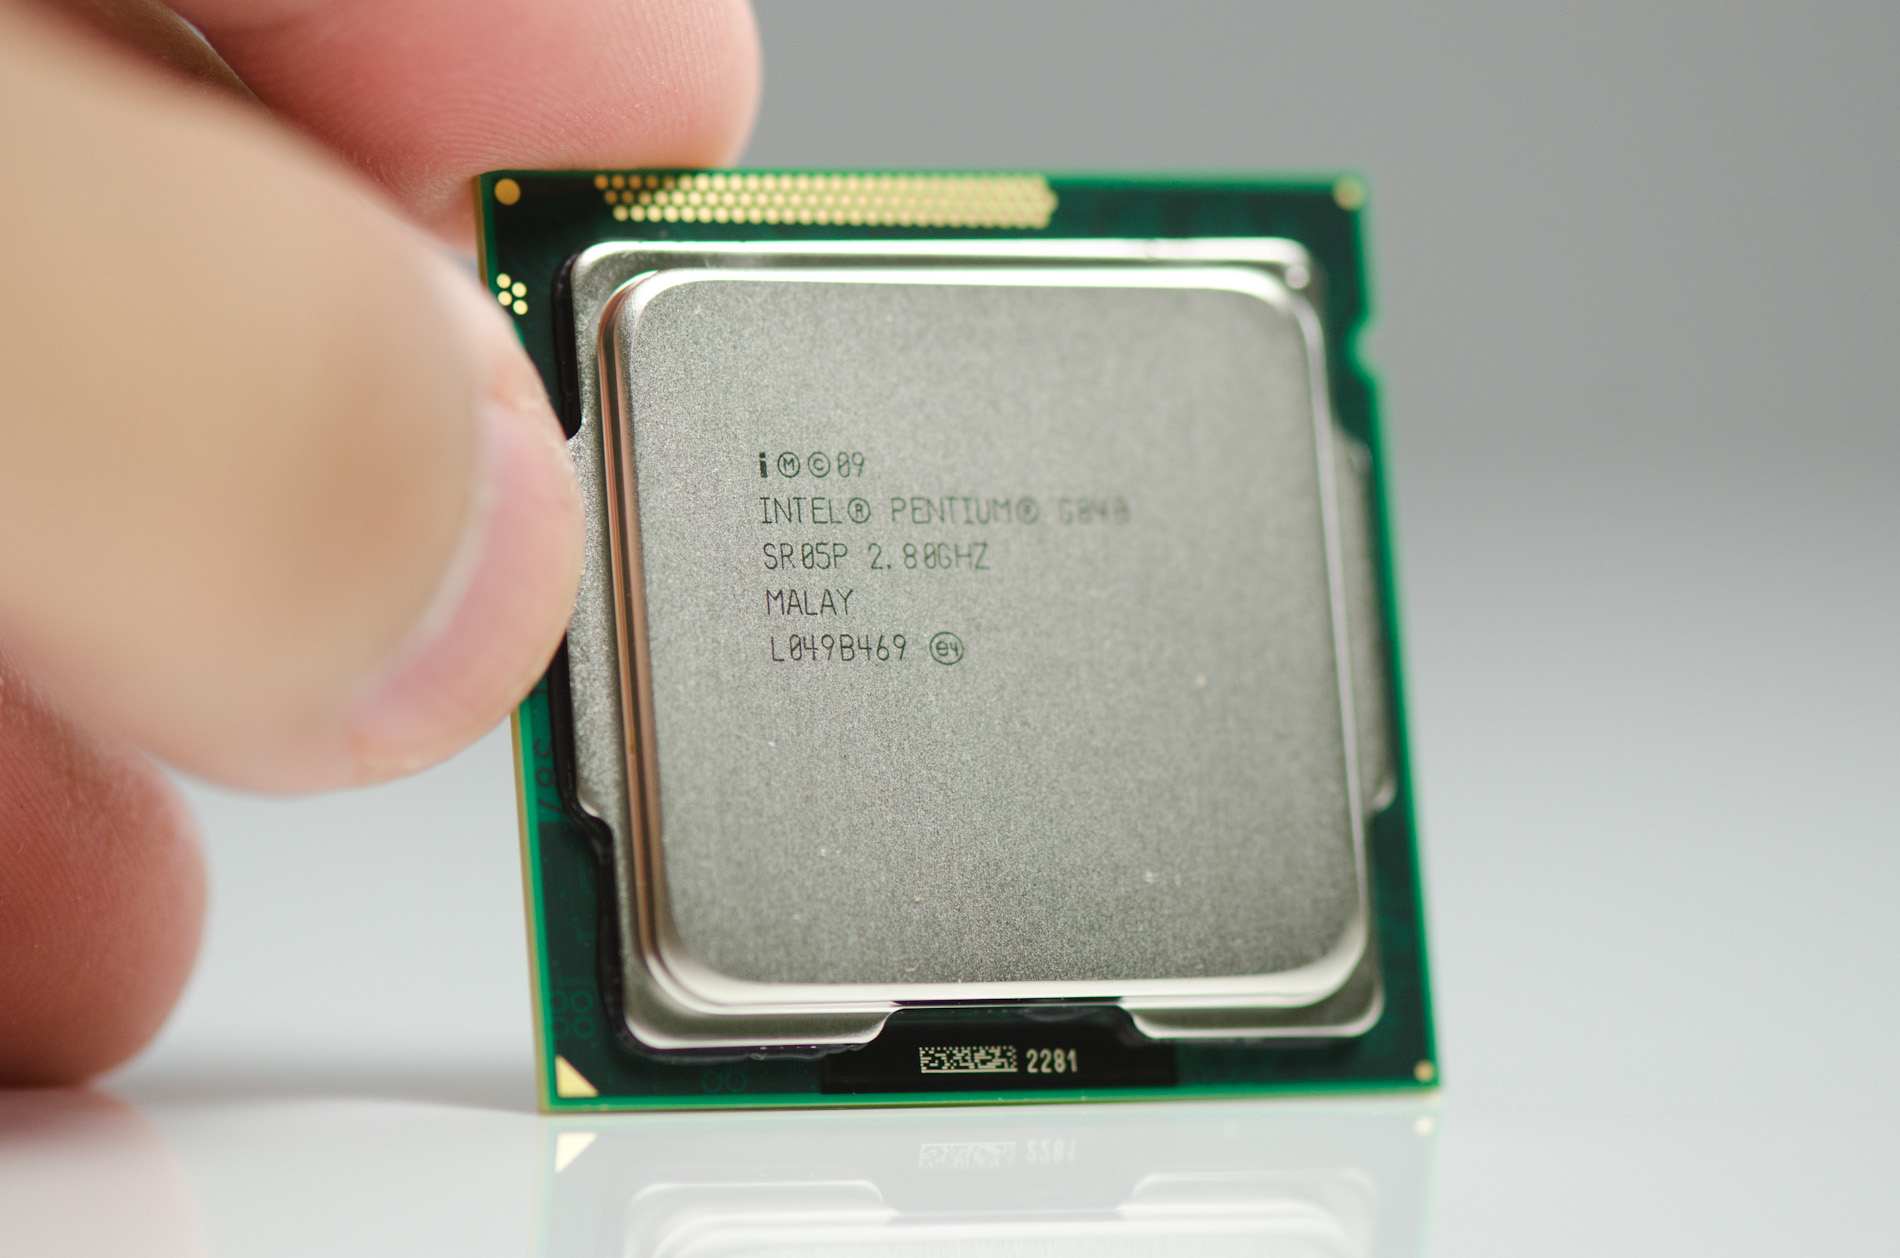 Заменить интел. Процессор Интел g620. Сокеты процессора Intel Pentium g620. Intel(r) Pentium(r) CPU g620. Intel Pentium g850.